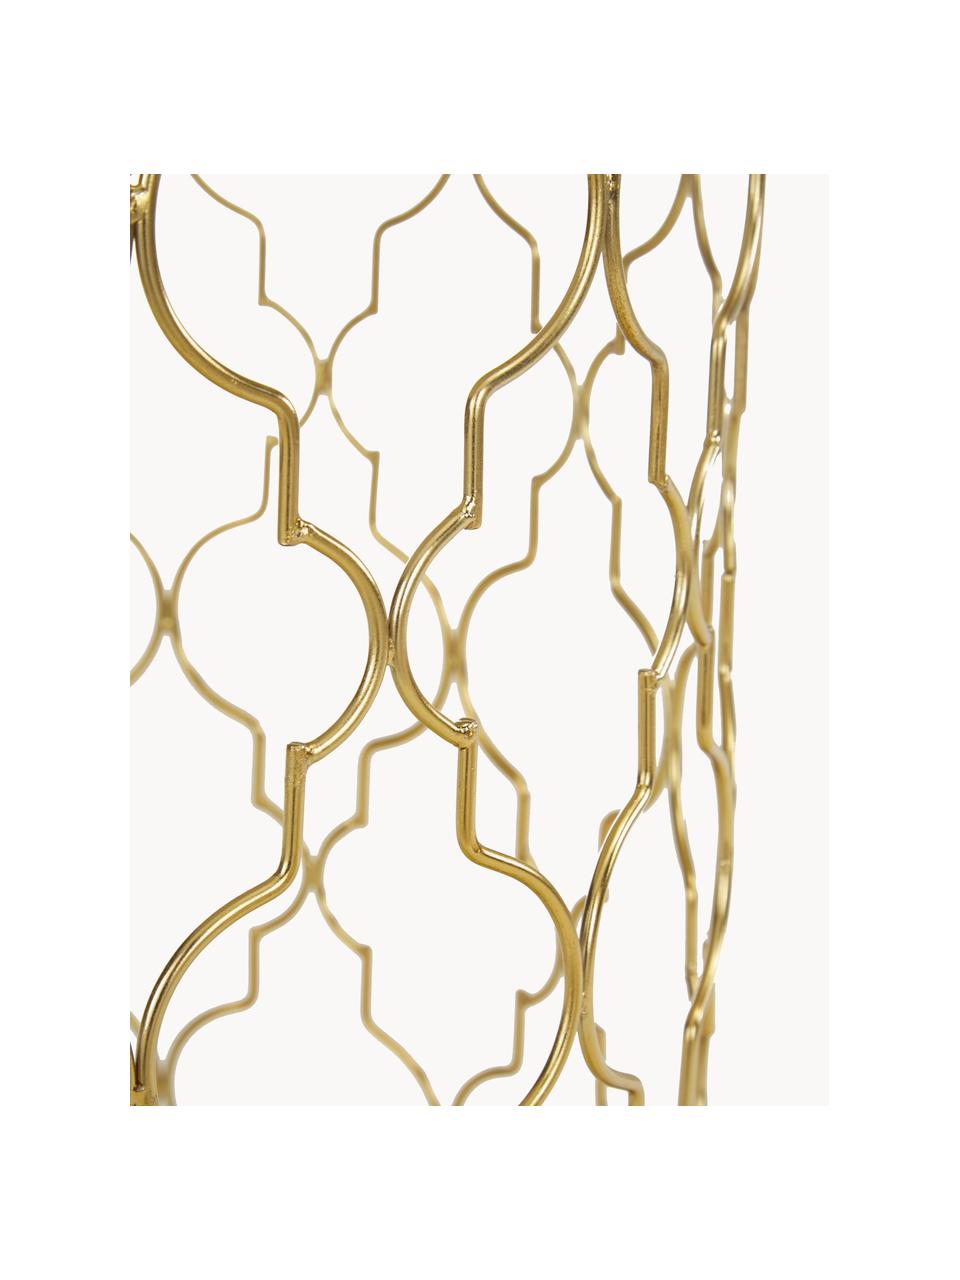 Marmor-Beistelltisch-Set Blake, 2-tlg., Weiß, marmoriert, Goldfarben, Set mit verschiedenen Größen